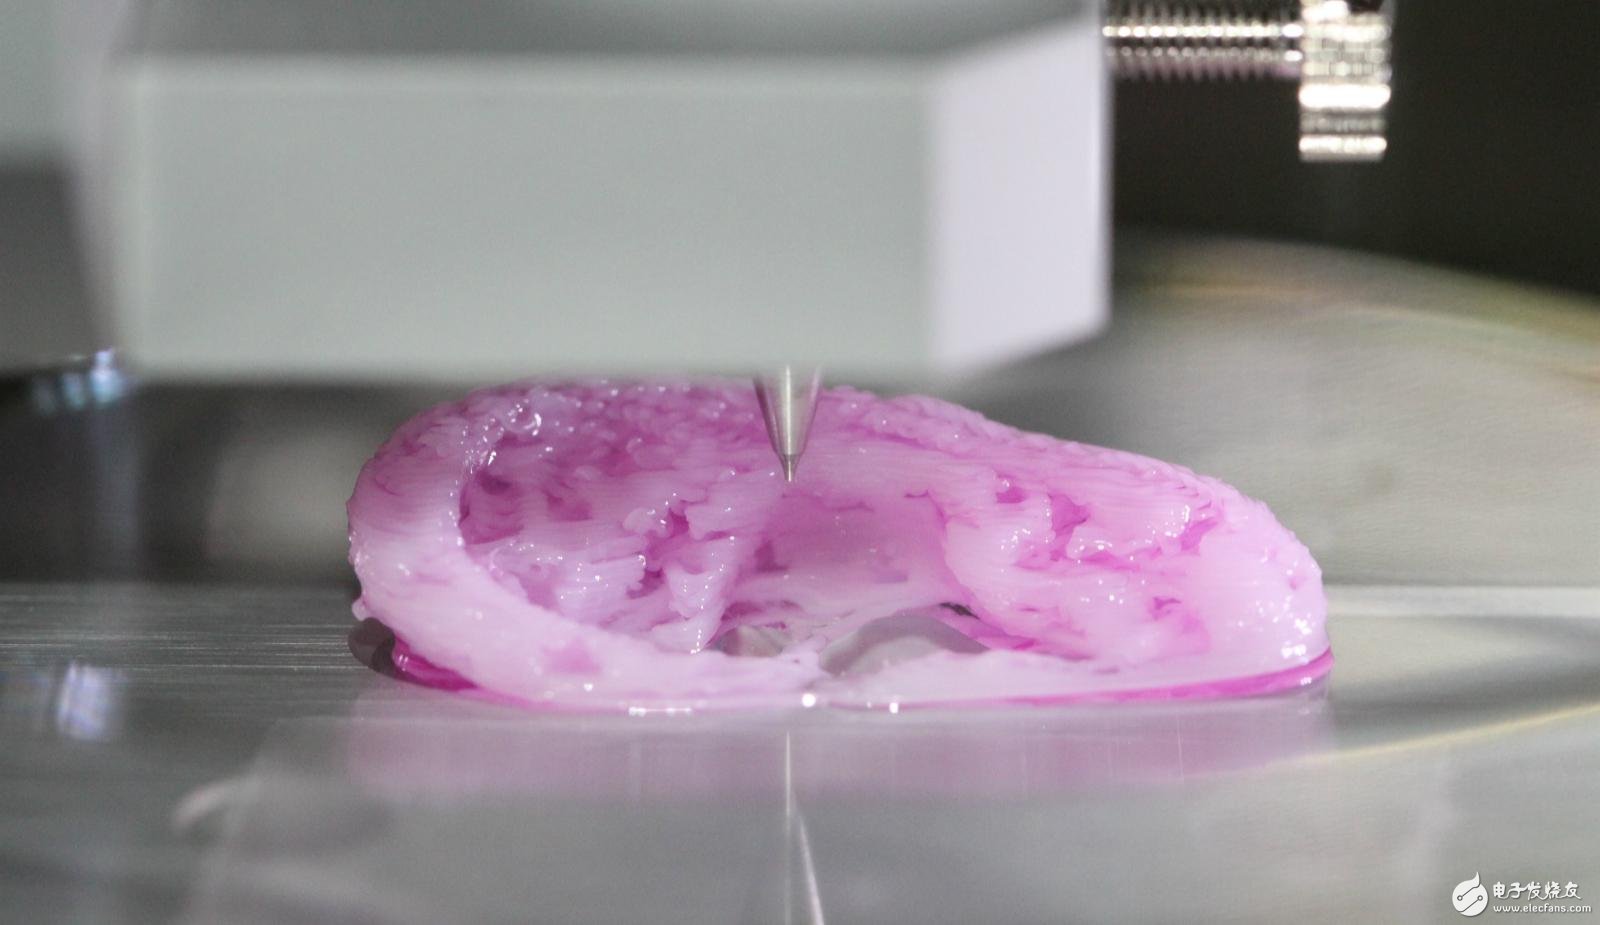 双管道模式的生物3D打印在医疗临床的应用